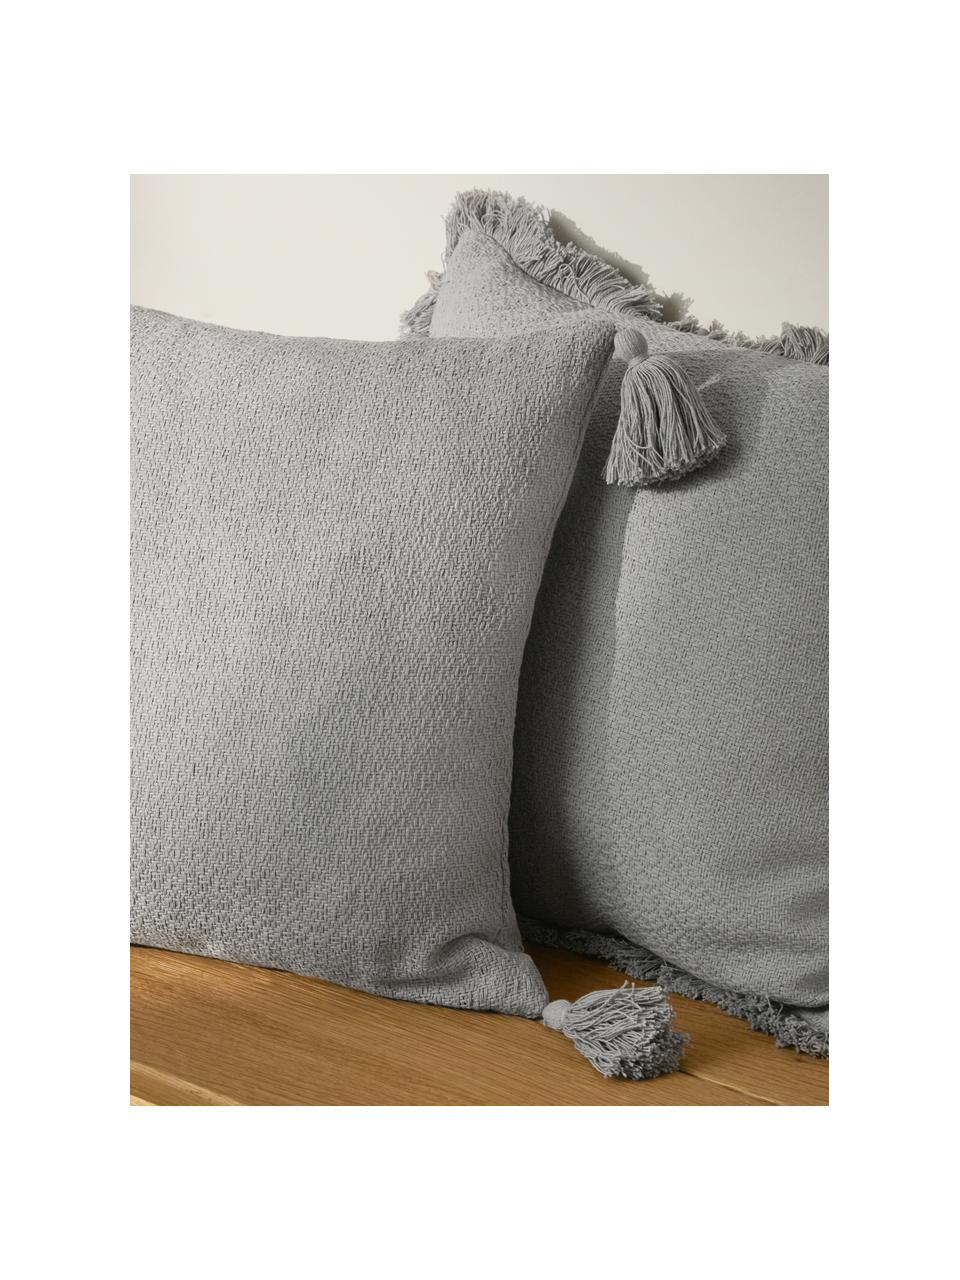 Poszewka na poduszkę z chwostami Lori, 100% bawełna, Szary, S 40 x D 40 cm